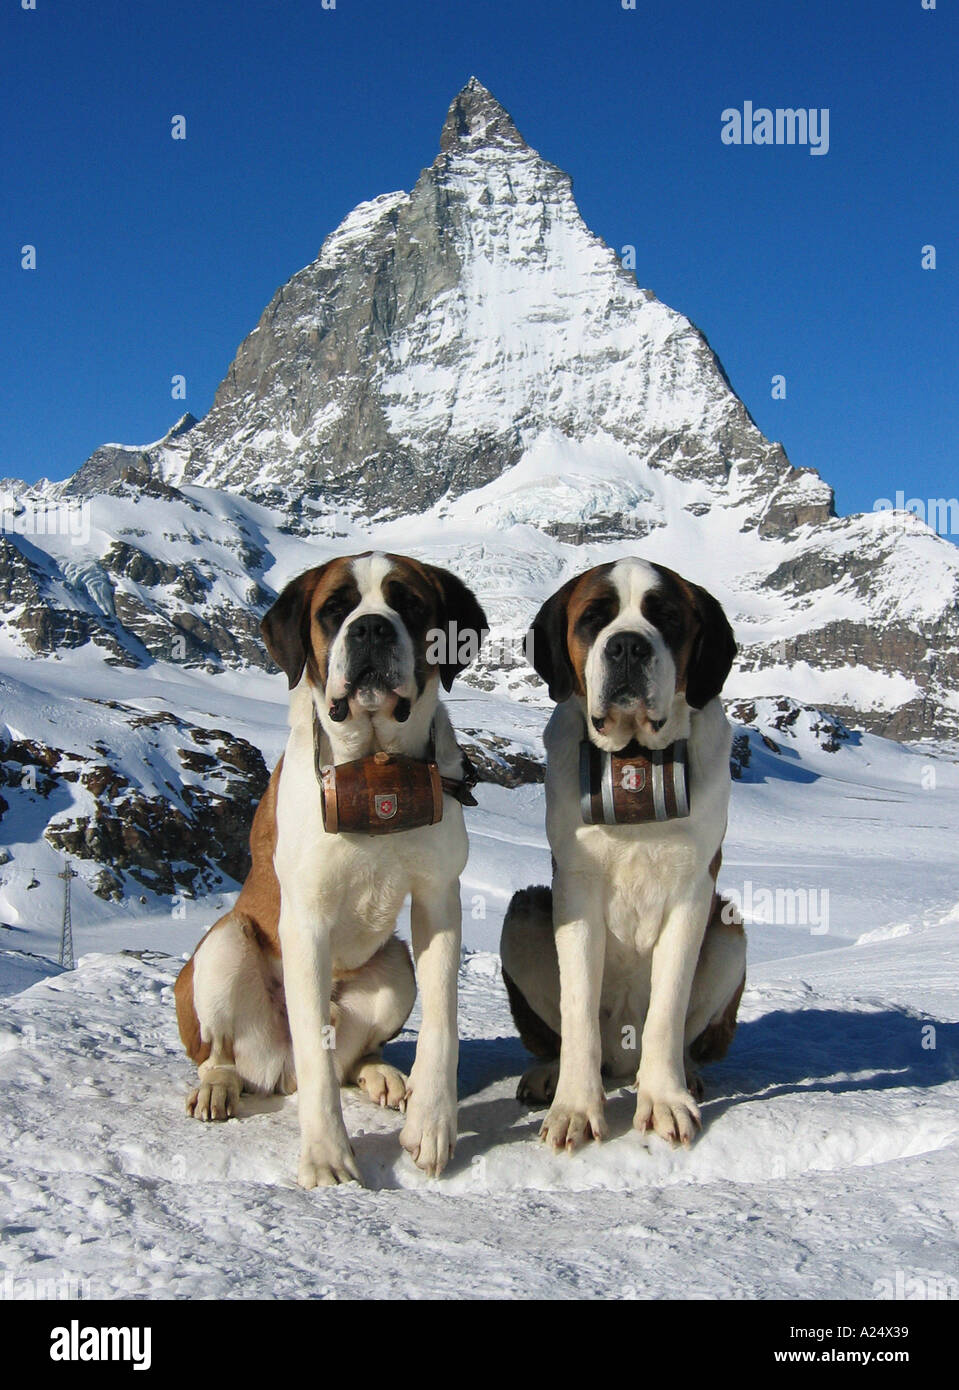 Bernhardiner Hunde im Schnee mit Matterhorn Berg im Hintergrund der Schweiz  Stockfotografie - Alamy